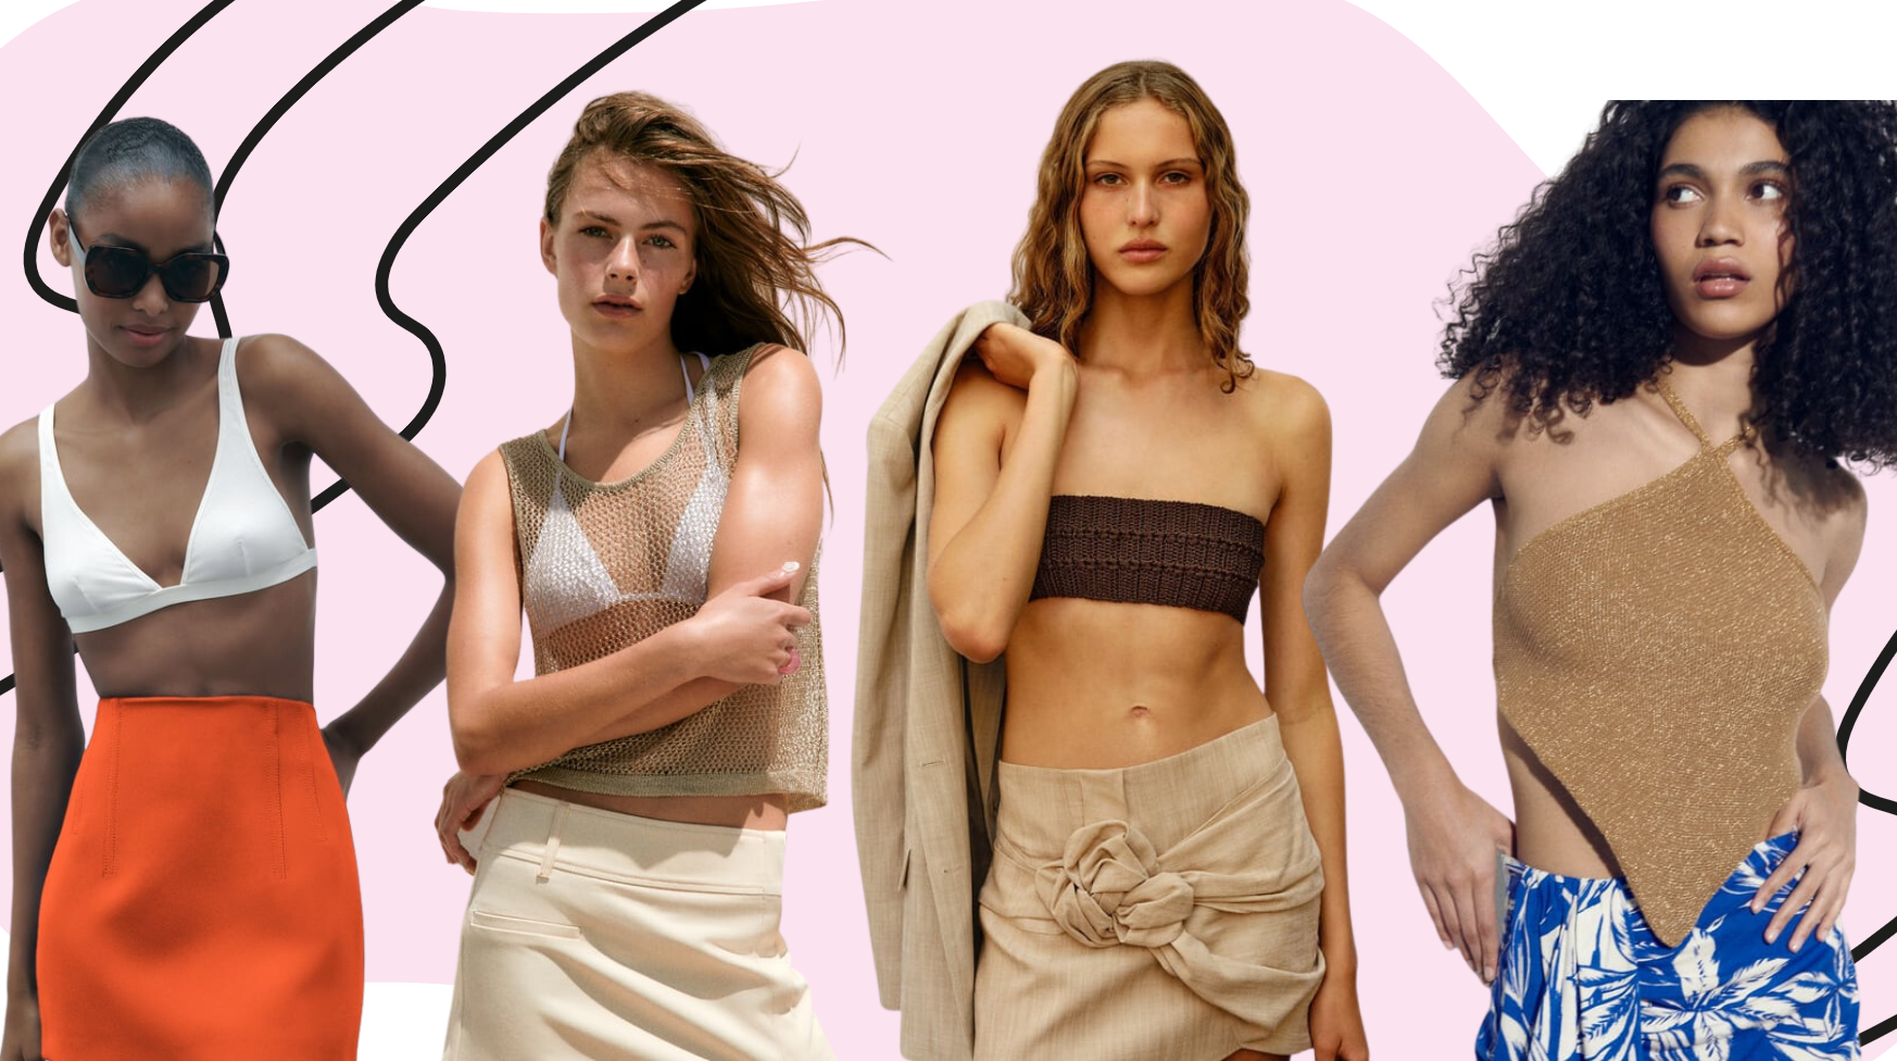 Mini suknje nose se i ove sezone: Izdvojili smo 15 najljepših modela iz Zare